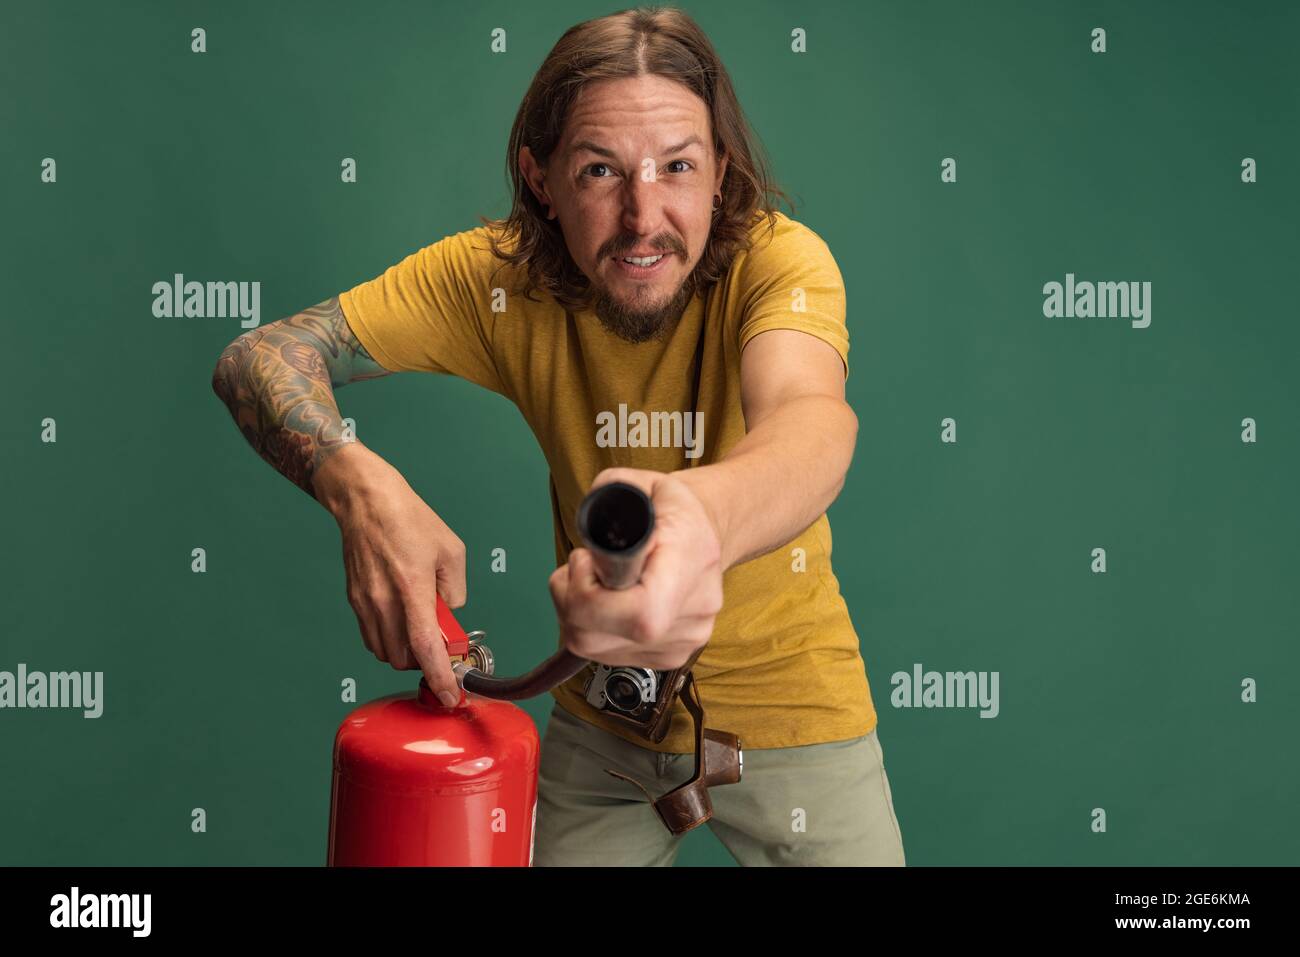 Comic-Porträt des jungen Mannes mit Feuerlöscher Spaß isoliert auf grünen  Studio-Hintergrund. Konzept von Beruf, Arbeit, lustige Meme Emotionen  Stockfotografie - Alamy